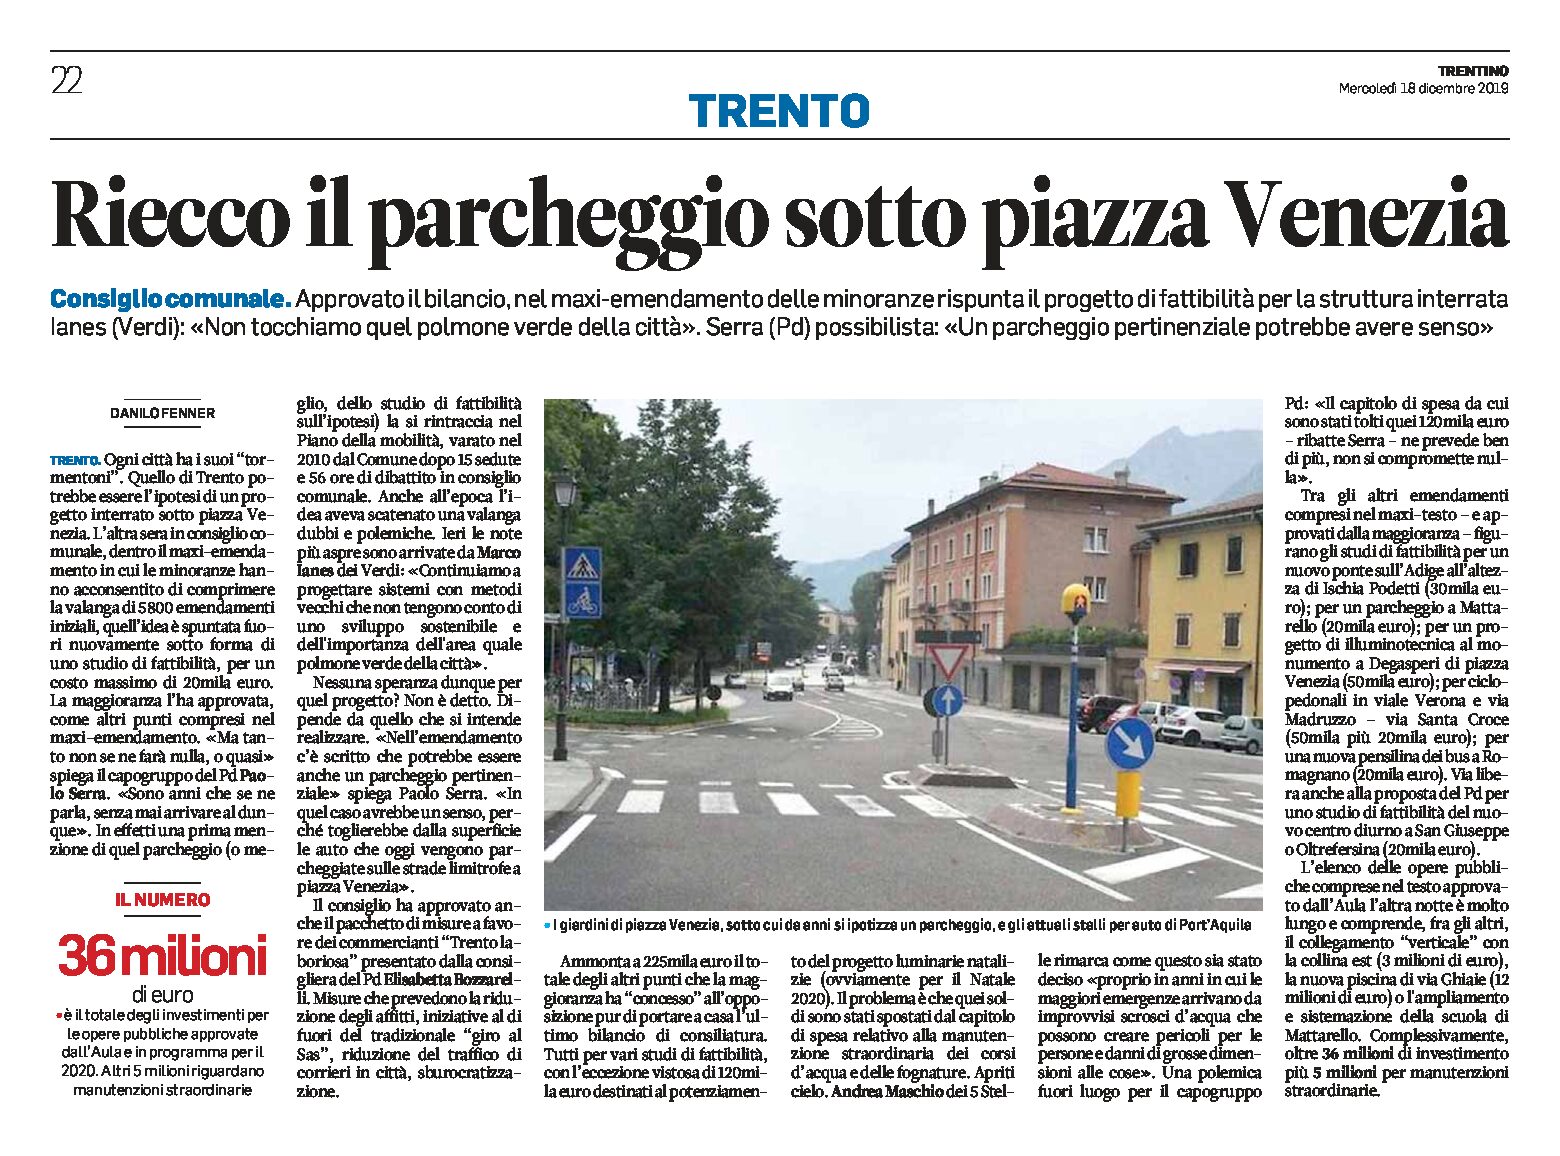 Trento, piazza Venezia: riecco il parcheggio. Rispunta il progetto di fattibilità